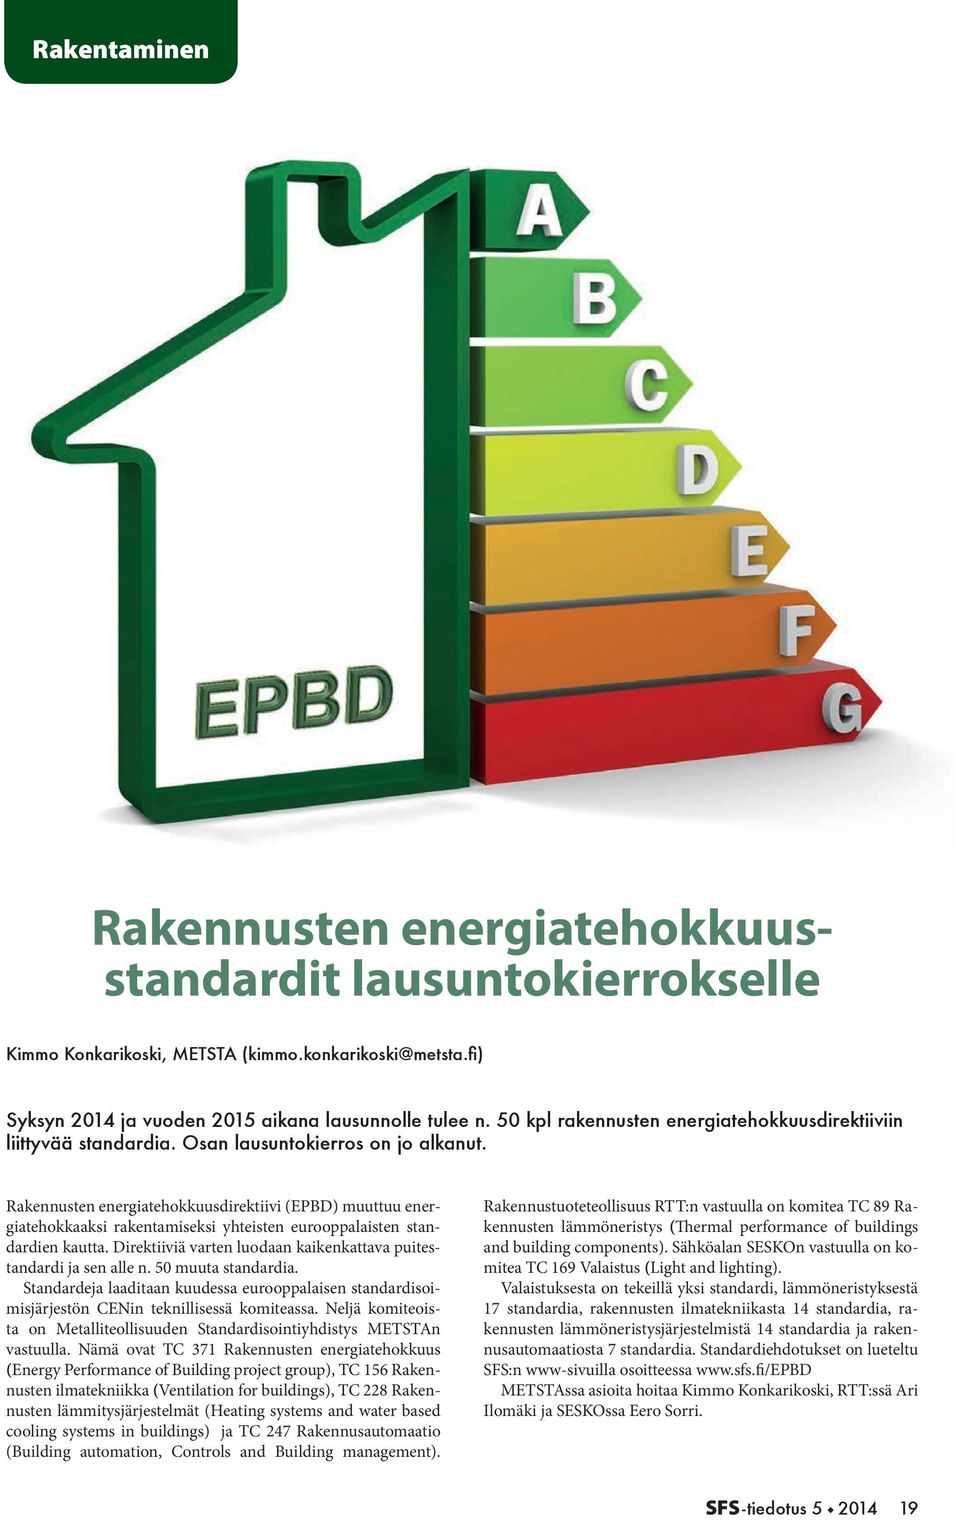 Rakennusten energiatehokkuusdirektiivi (EPBD) muuttuu energiatehokkaaksi rakentamiseksi yhteisten eurooppalaisten standardien kautta.